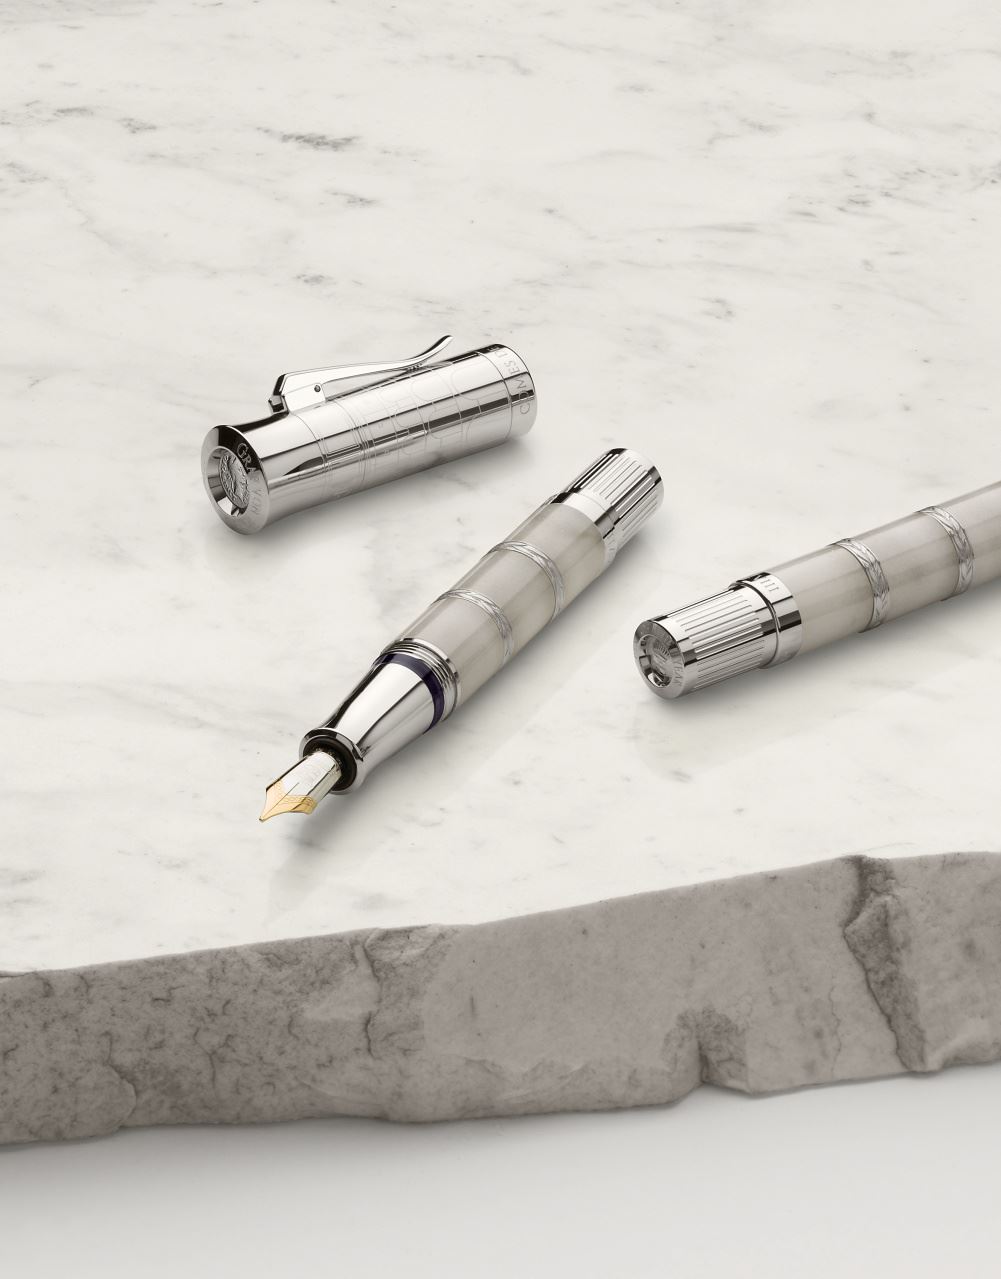 Graf-von-Faber-Castell - Pluma Pen of the Year 2018, platino y mármol blanco – M